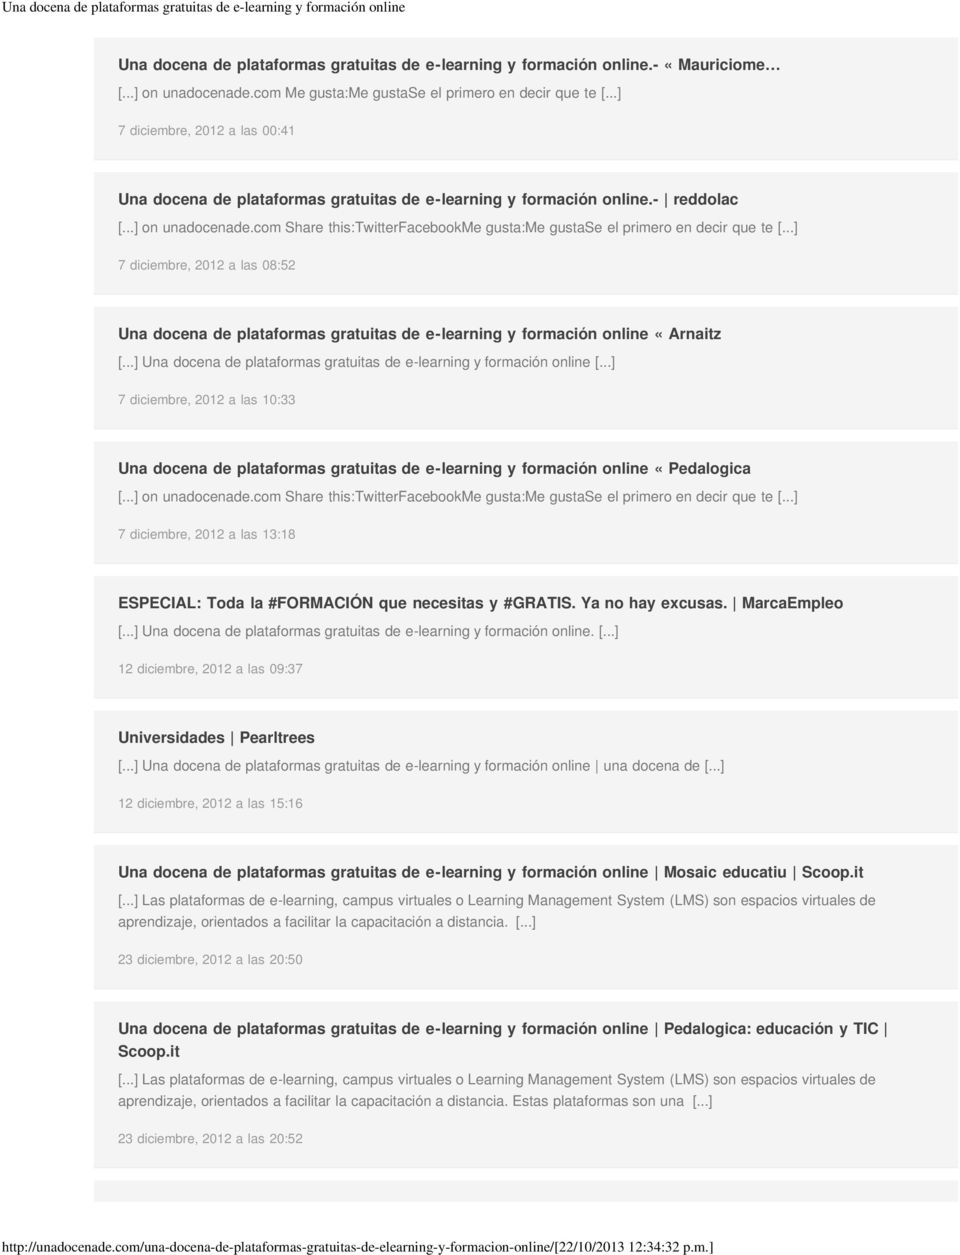 com Share this:twitterfacebookme gusta:me gustase el primero en decir que te [...] 7 diciembre, 2012 a las 08:52 Una docena de plataformas gratuitas de e-learning y formación online «Arnaitz [.